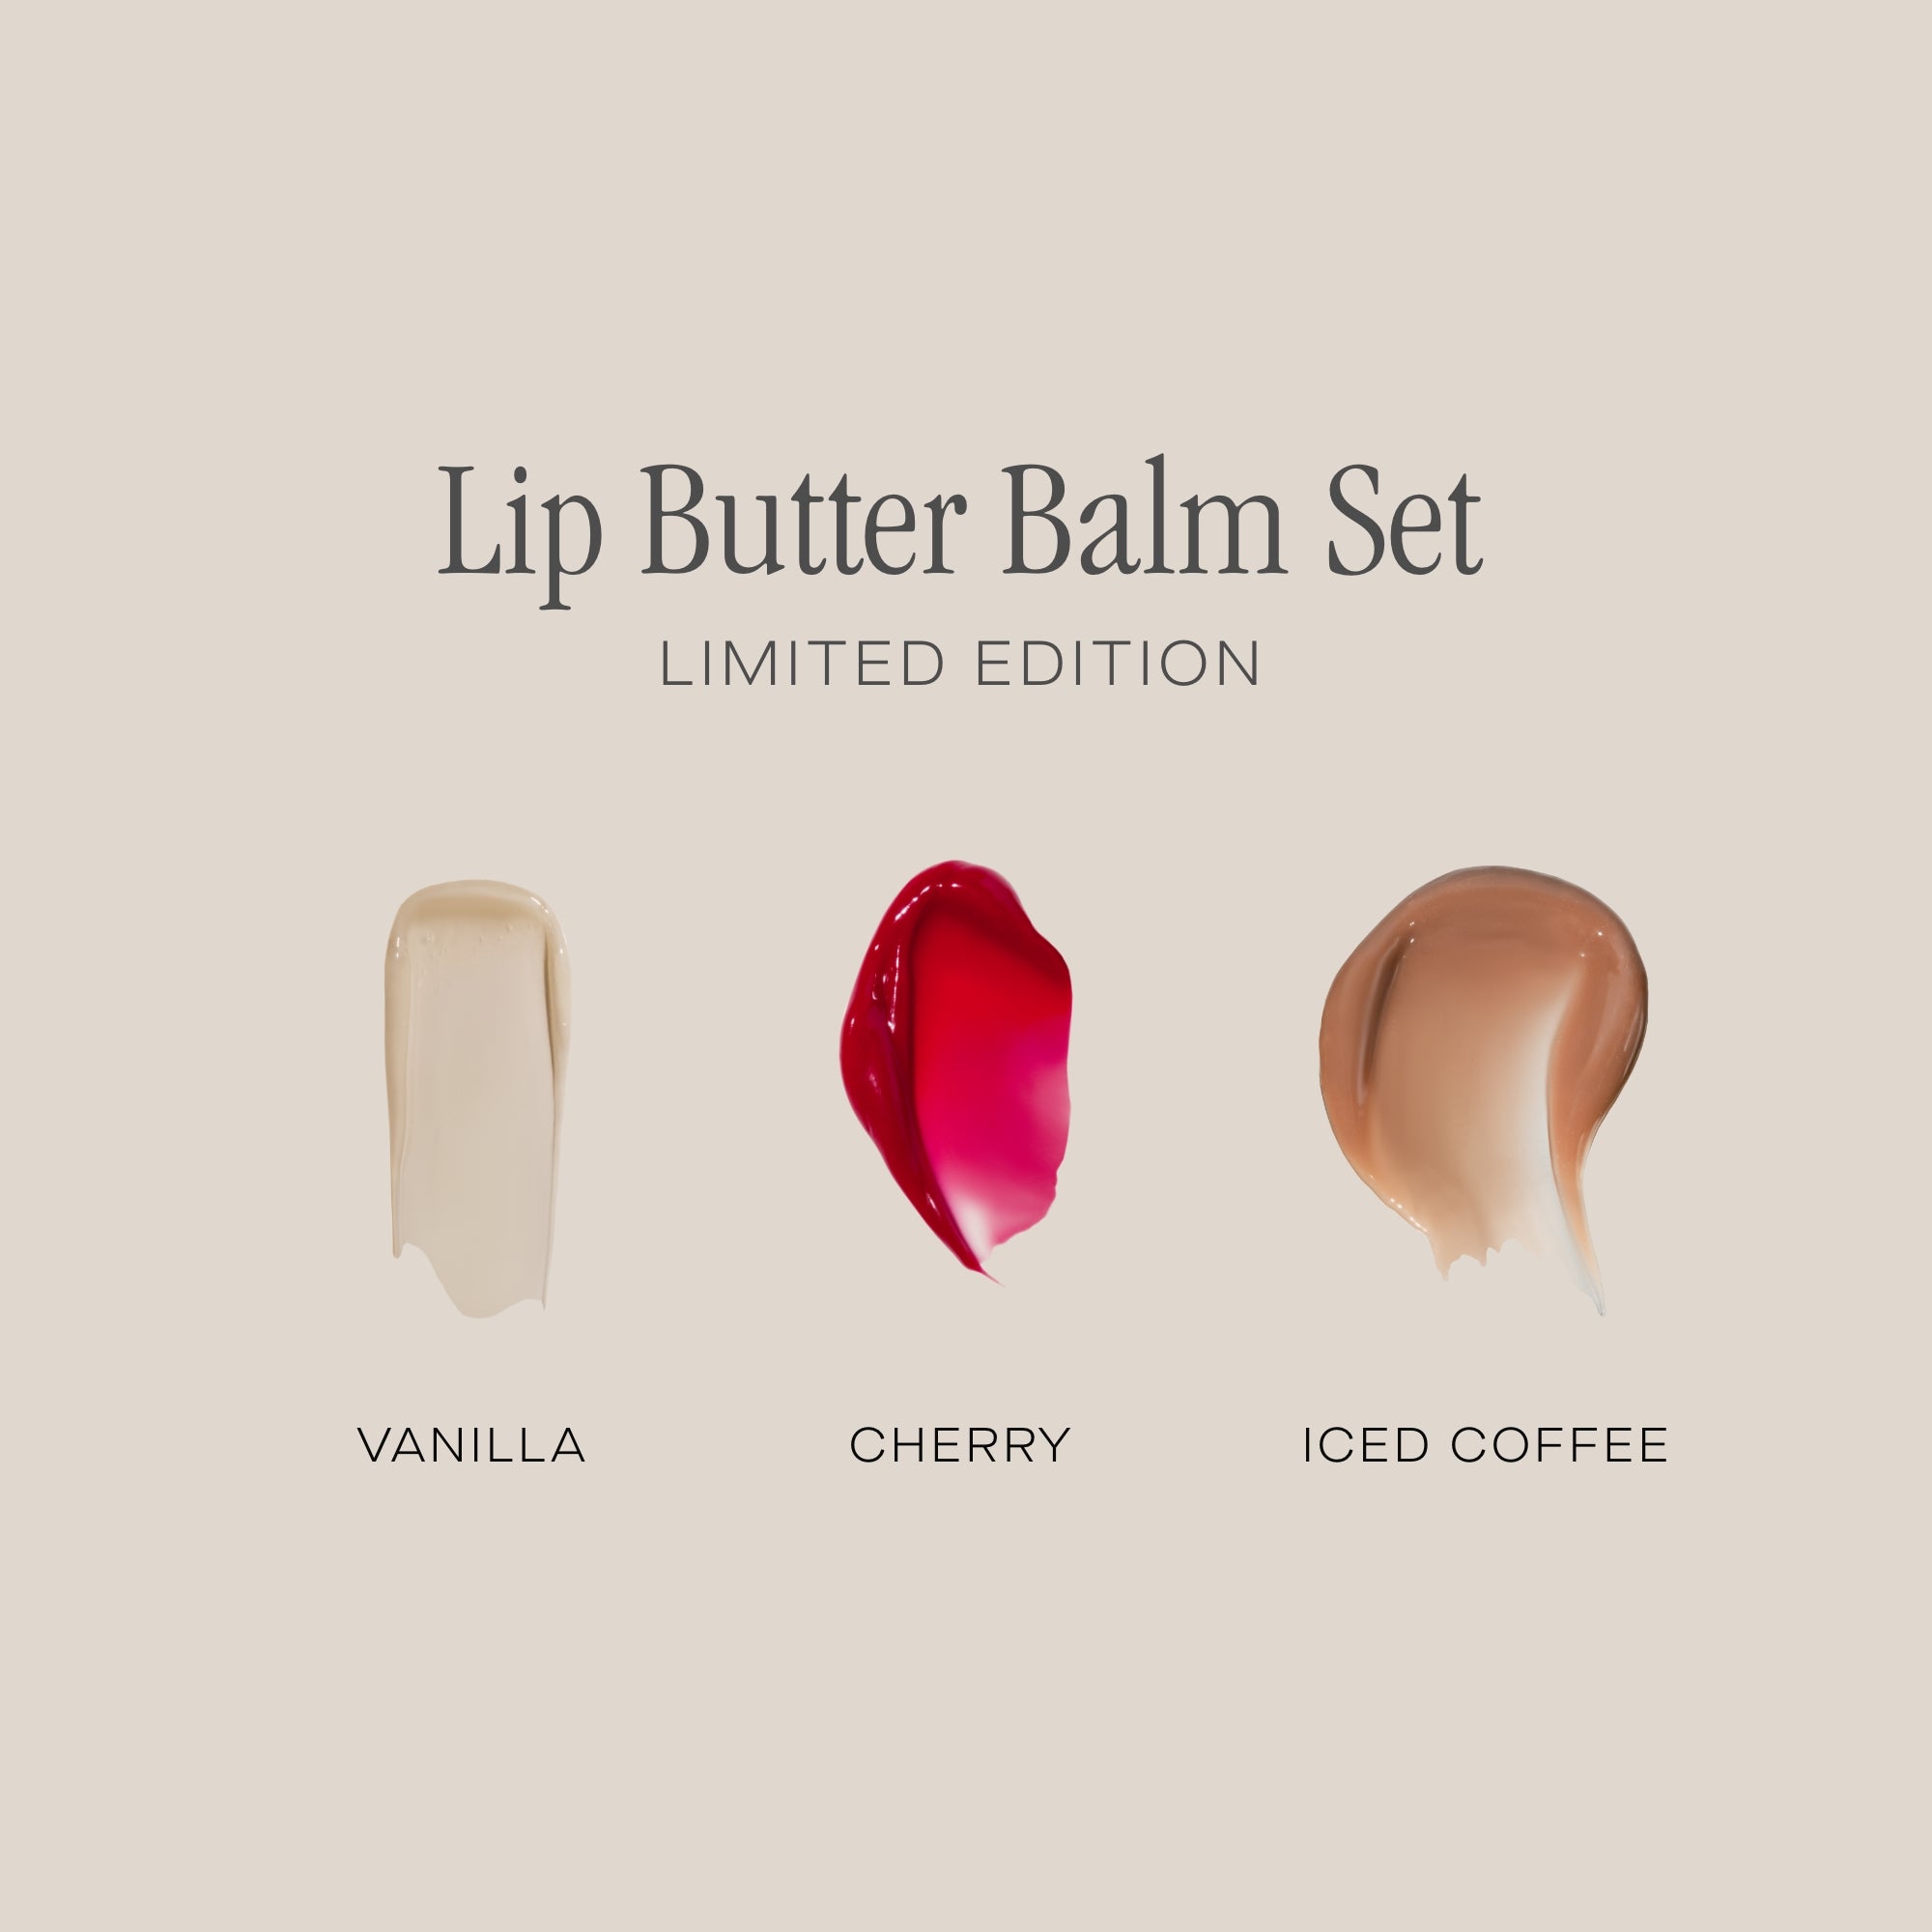 The Lip Butter Balm Set